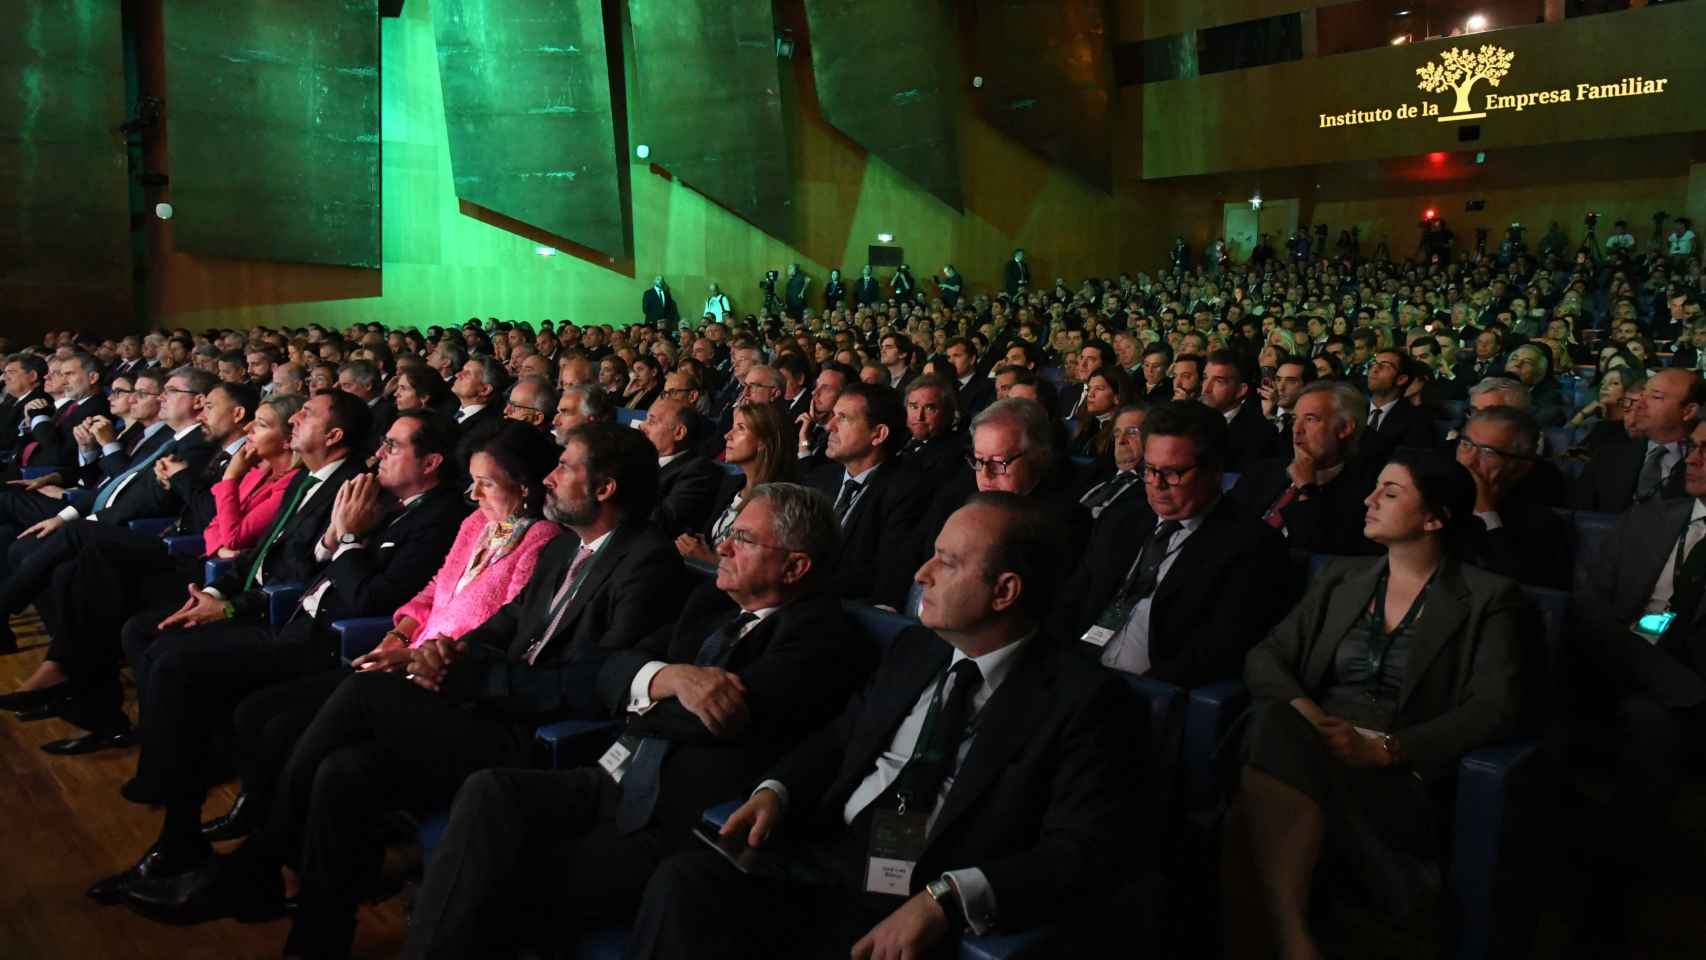 Al congreso del IEF han asistido más de medio millar de empresarios familiares de toda España.